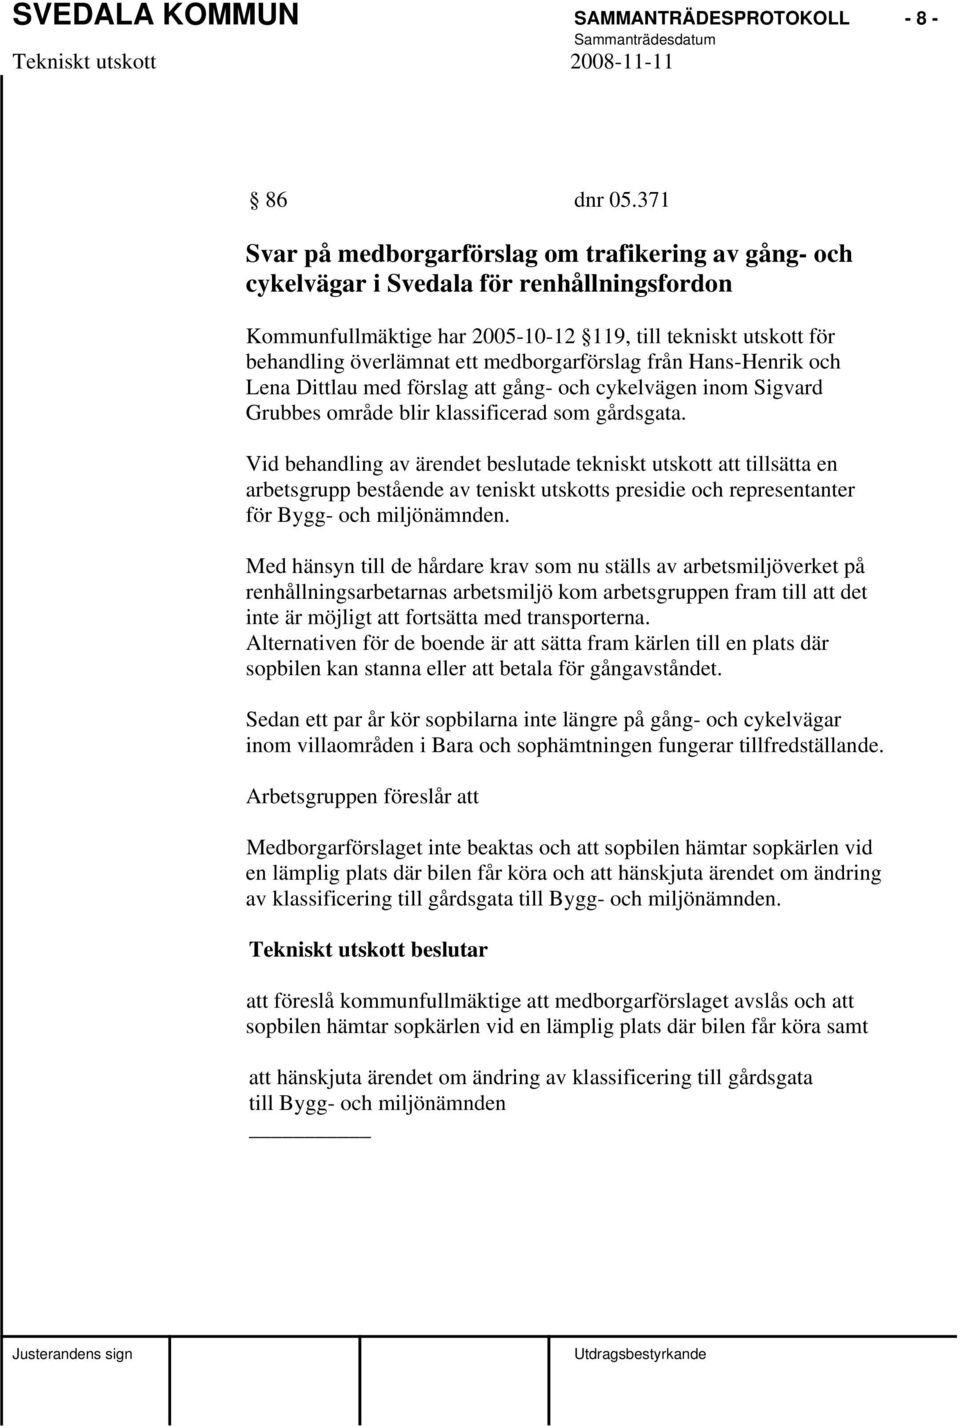 medborgarförslag från Hans-Henrik och Lena Dittlau med förslag att gång- och cykelvägen inom Sigvard Grubbes område blir klassificerad som gårdsgata.